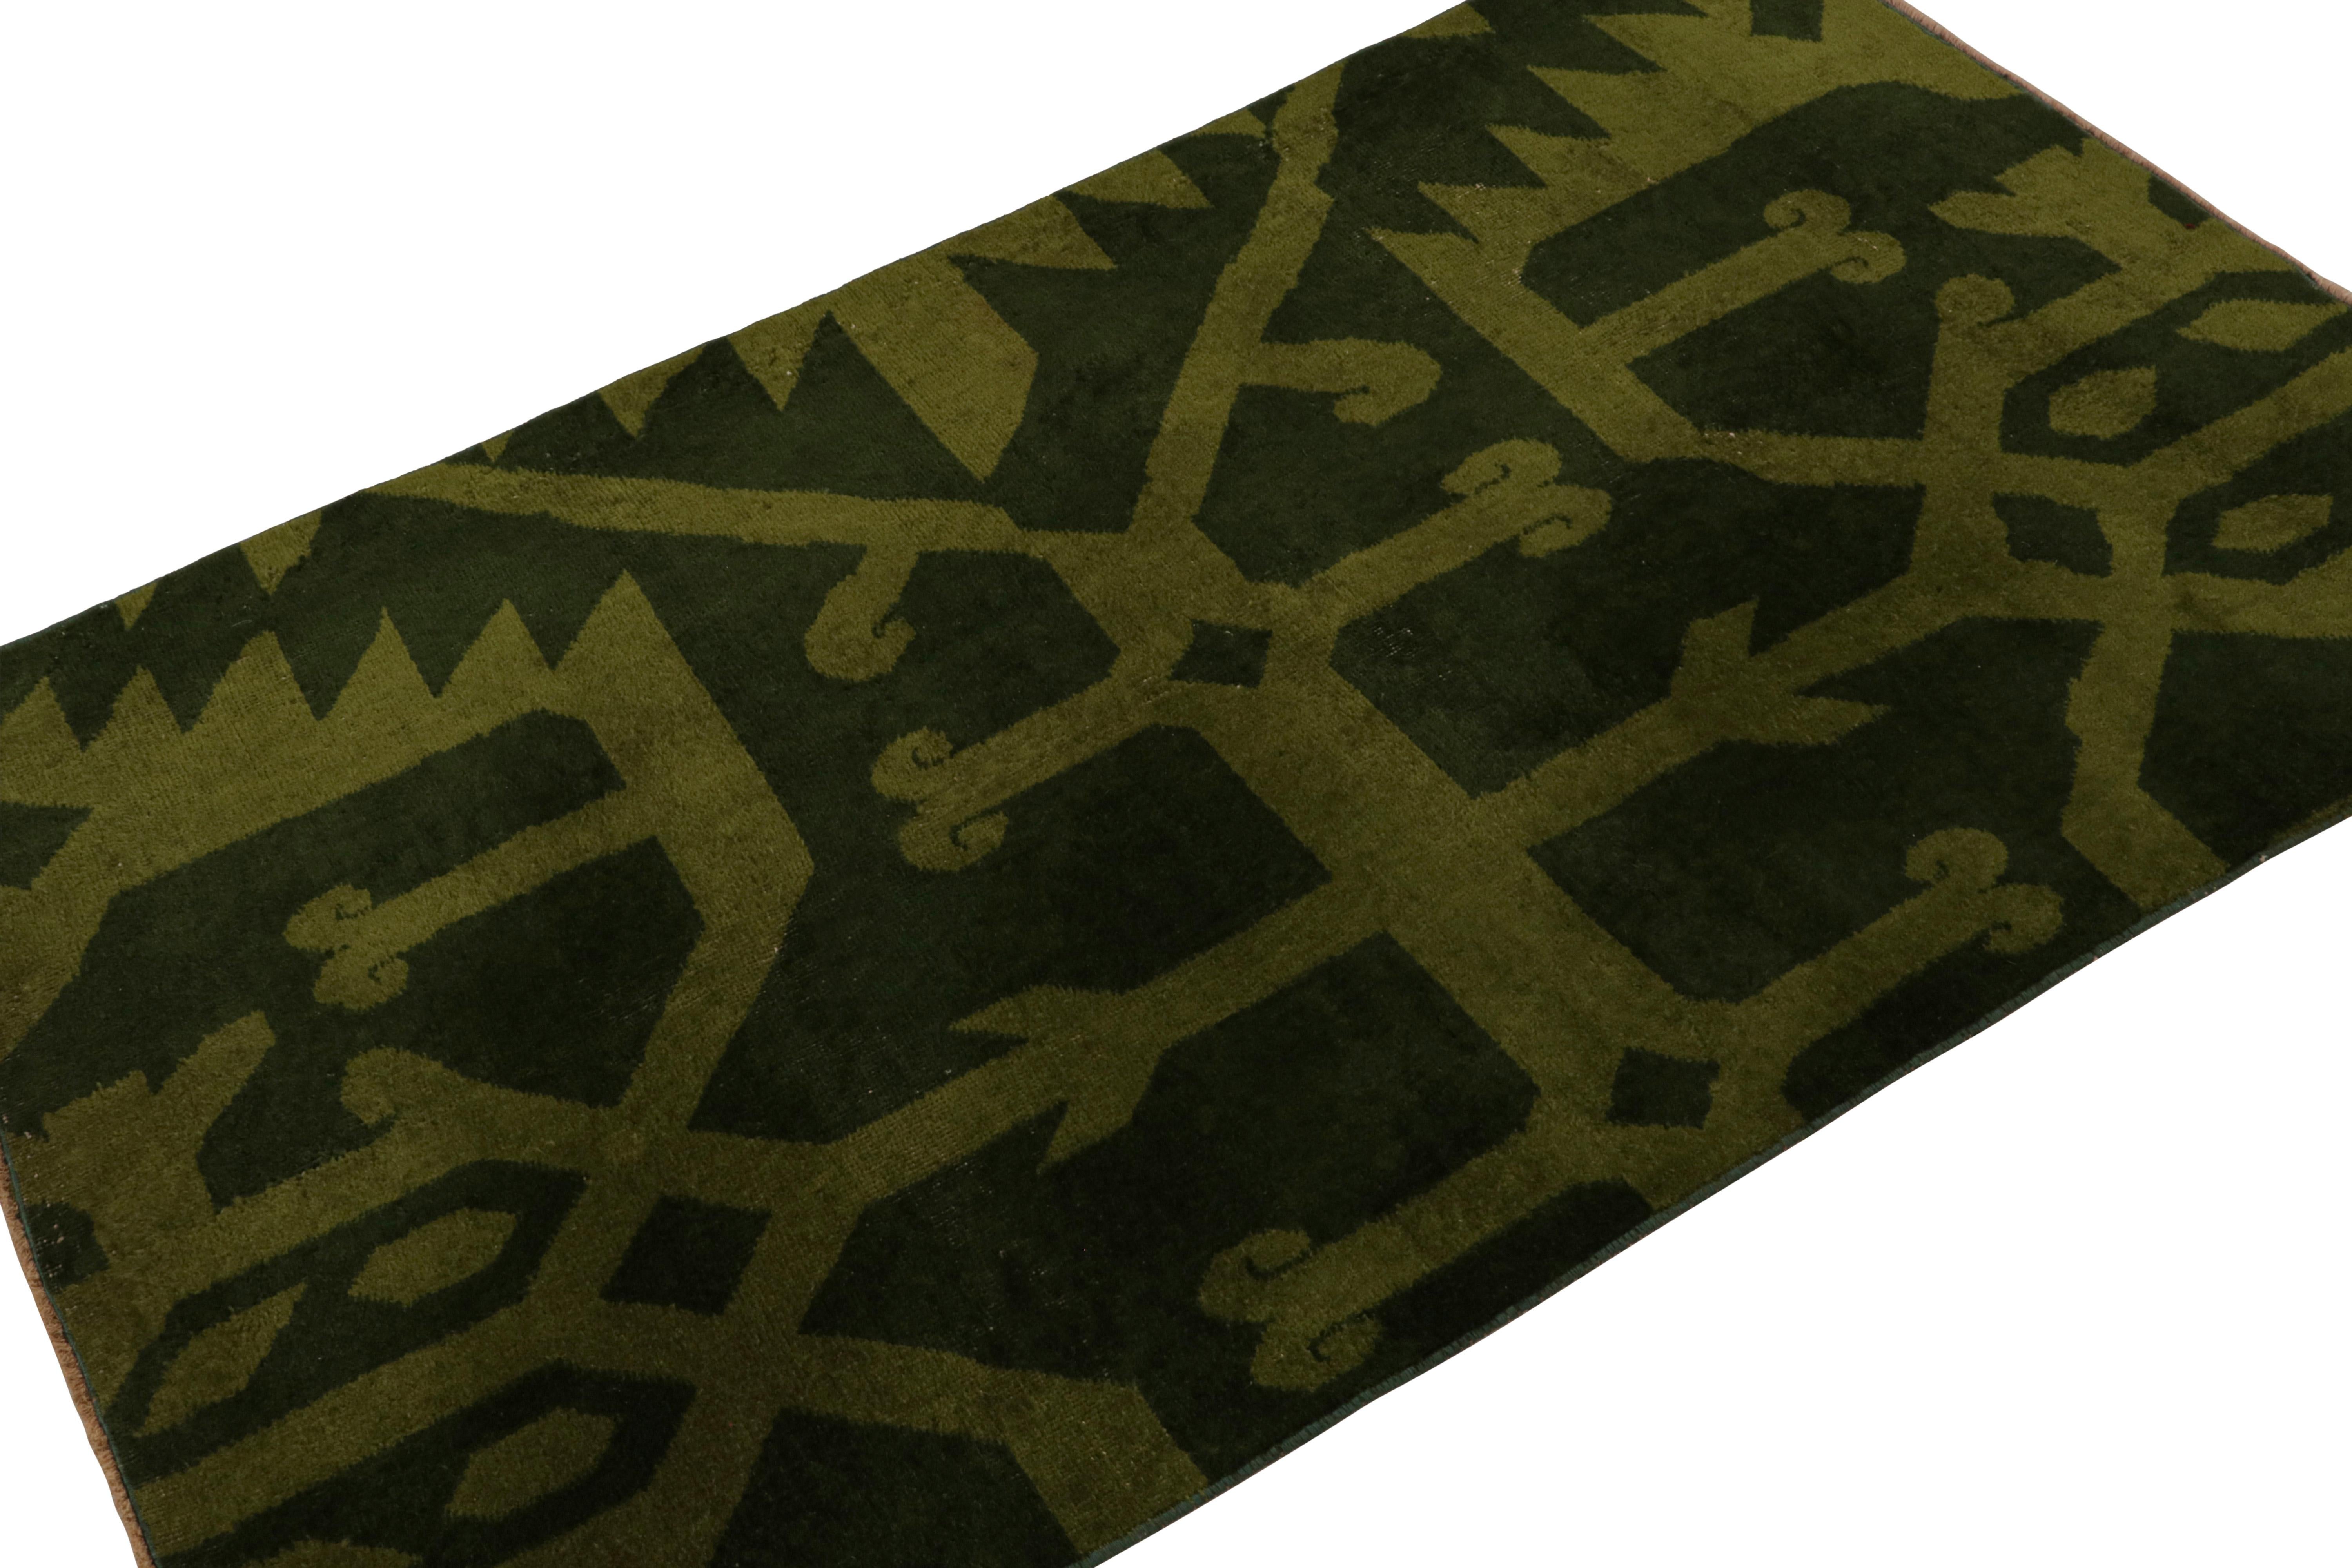 Handgeknüpft aus Wolle, ca. 1960 - 1970, zeigt dieser 4x5 Vintage Müren Art Deco Teppich ein waldgrünes Feld mit chartreusen, miteinander verbundenen geometrischen Mustern. 

Über das Design: 

Kenner werden das einzigartige Design zu schätzen